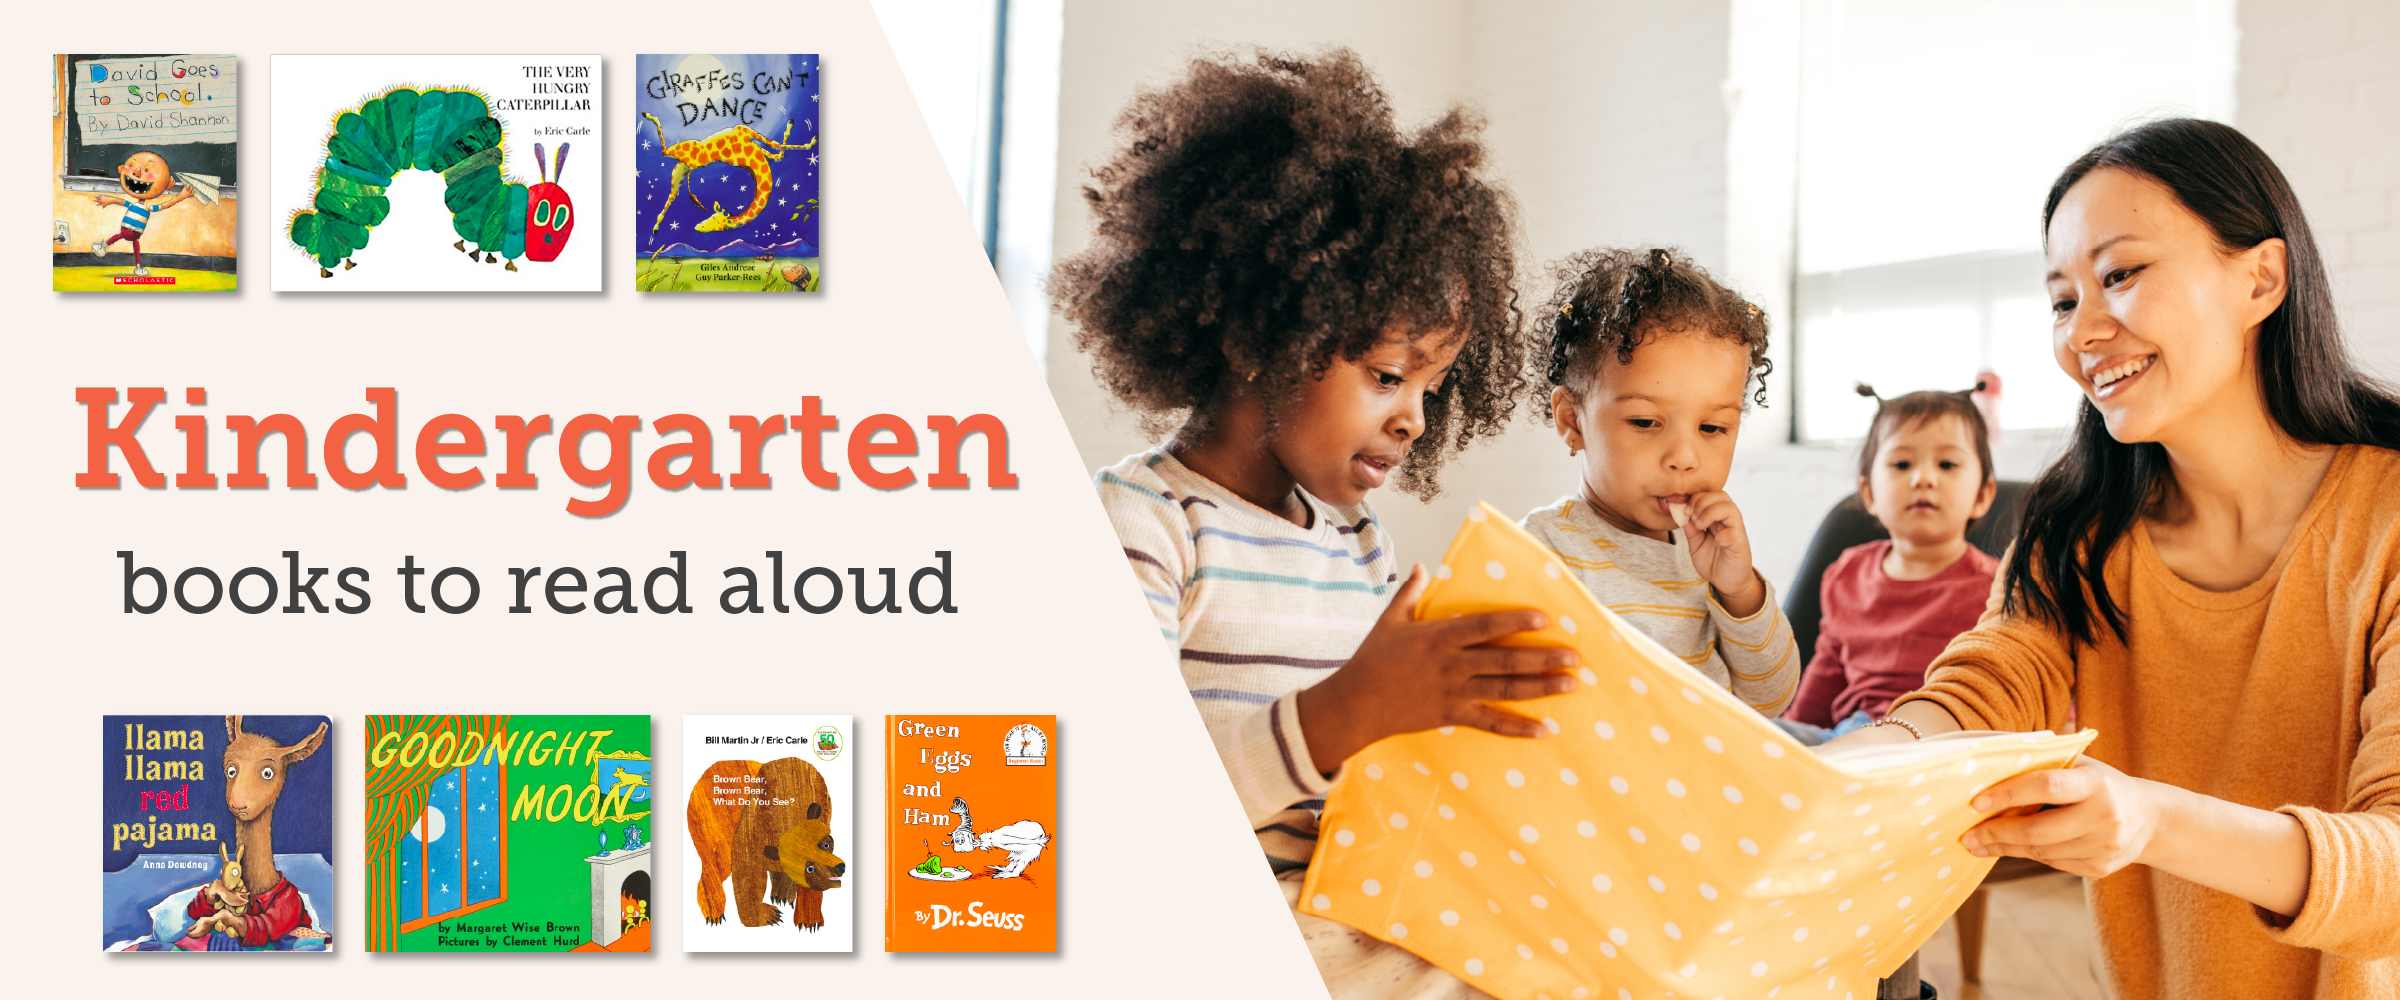 Kindergarten books to read aloud